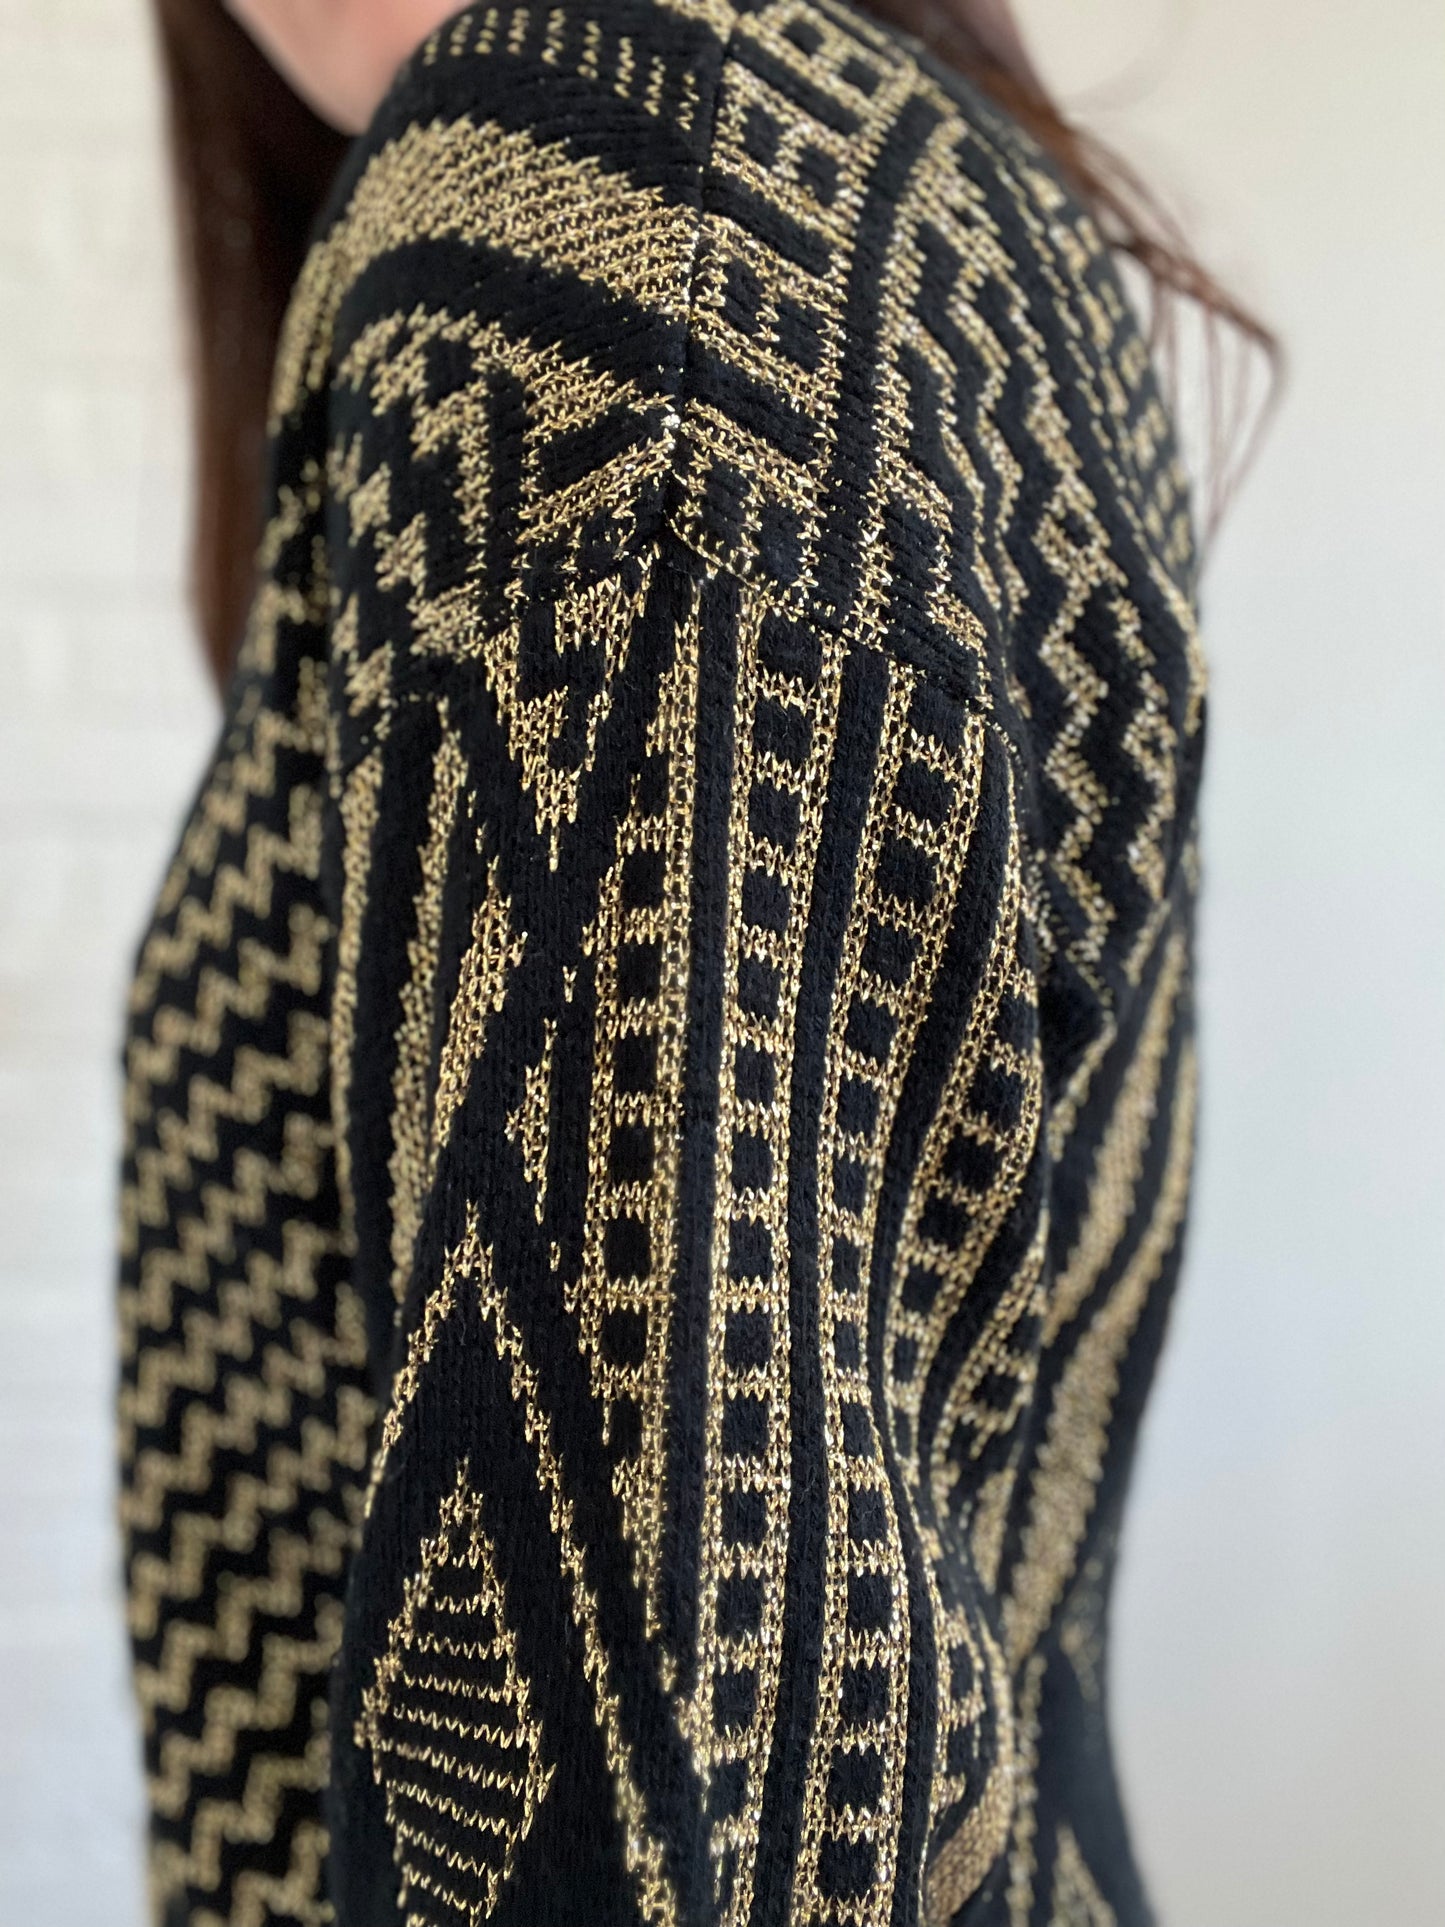 Black & Gold Metallic Knit Sweater - L